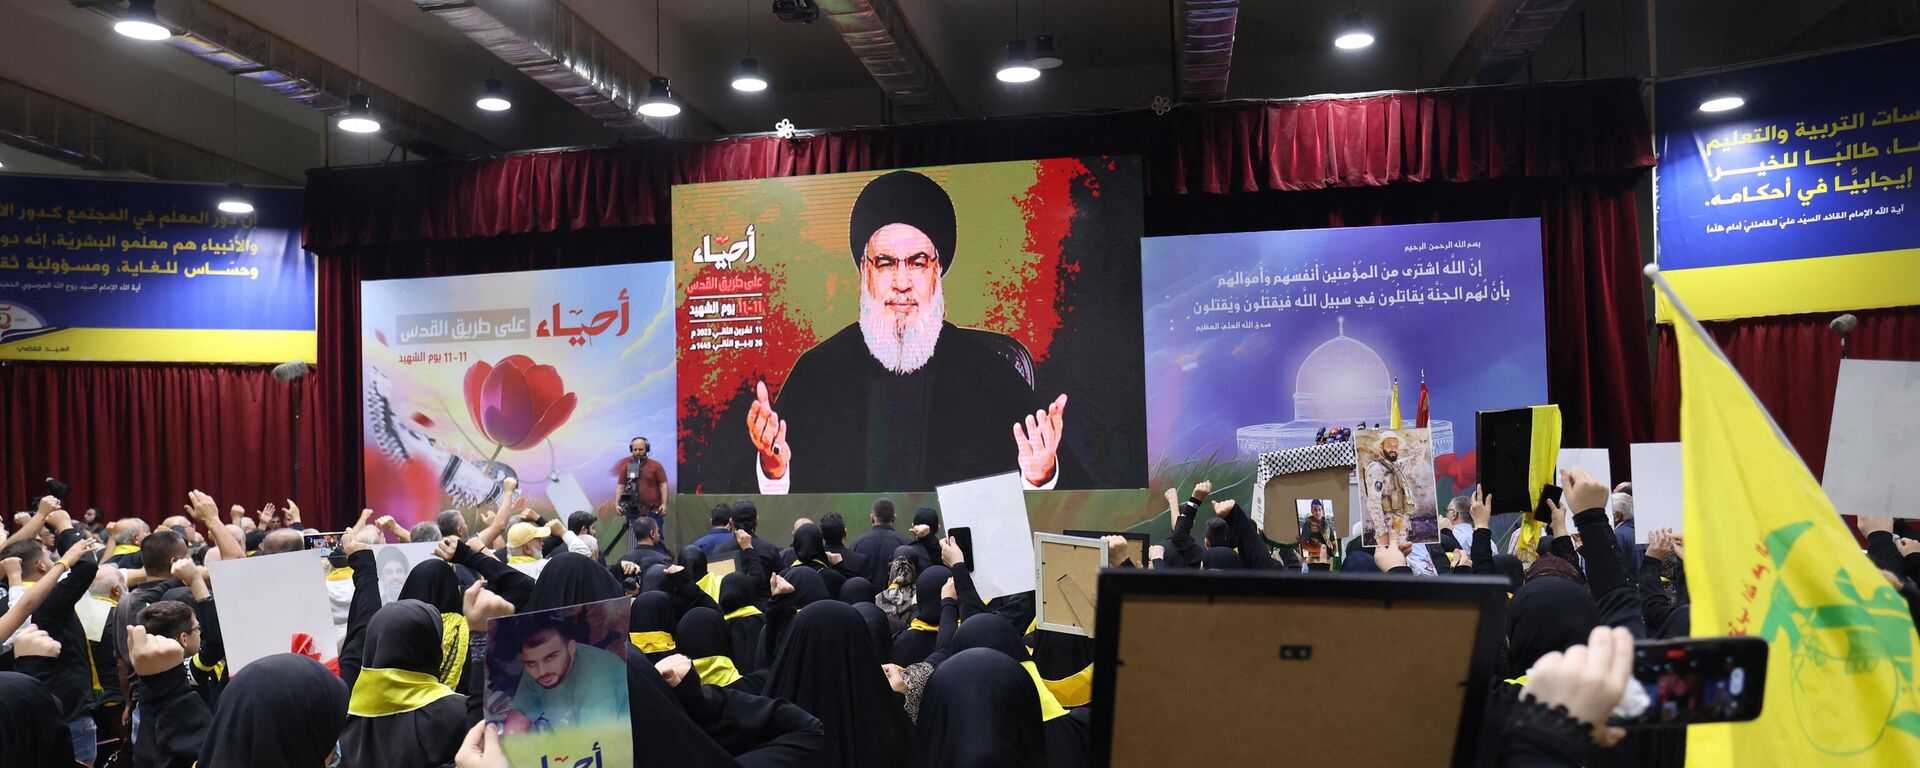 Apoiadores do movimento muçulmano xiita libanês Hezbollah assistem ao chefe do movimento, Hassan Nasrallah, fazer um discurso televisionado em uma grande tela comemorando o Dia anual dos Mártires do Hezbollah, nos subúrbios ao sul de Beirute, em 11 de novembro de 2023 - Sputnik Brasil, 1920, 11.11.2023